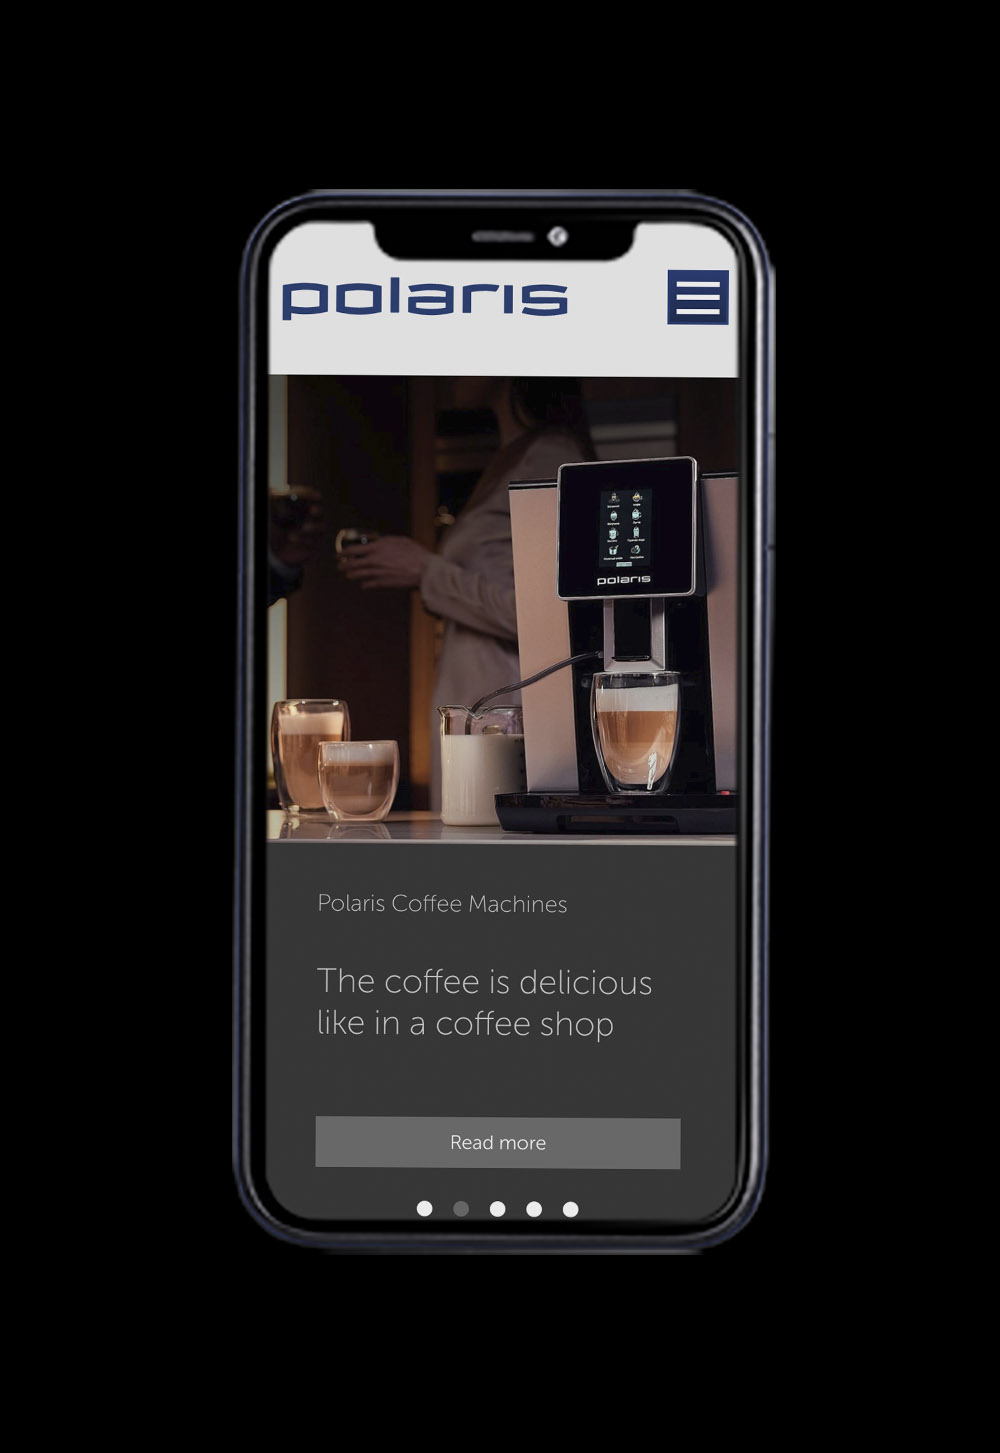 Polaris website - image 1